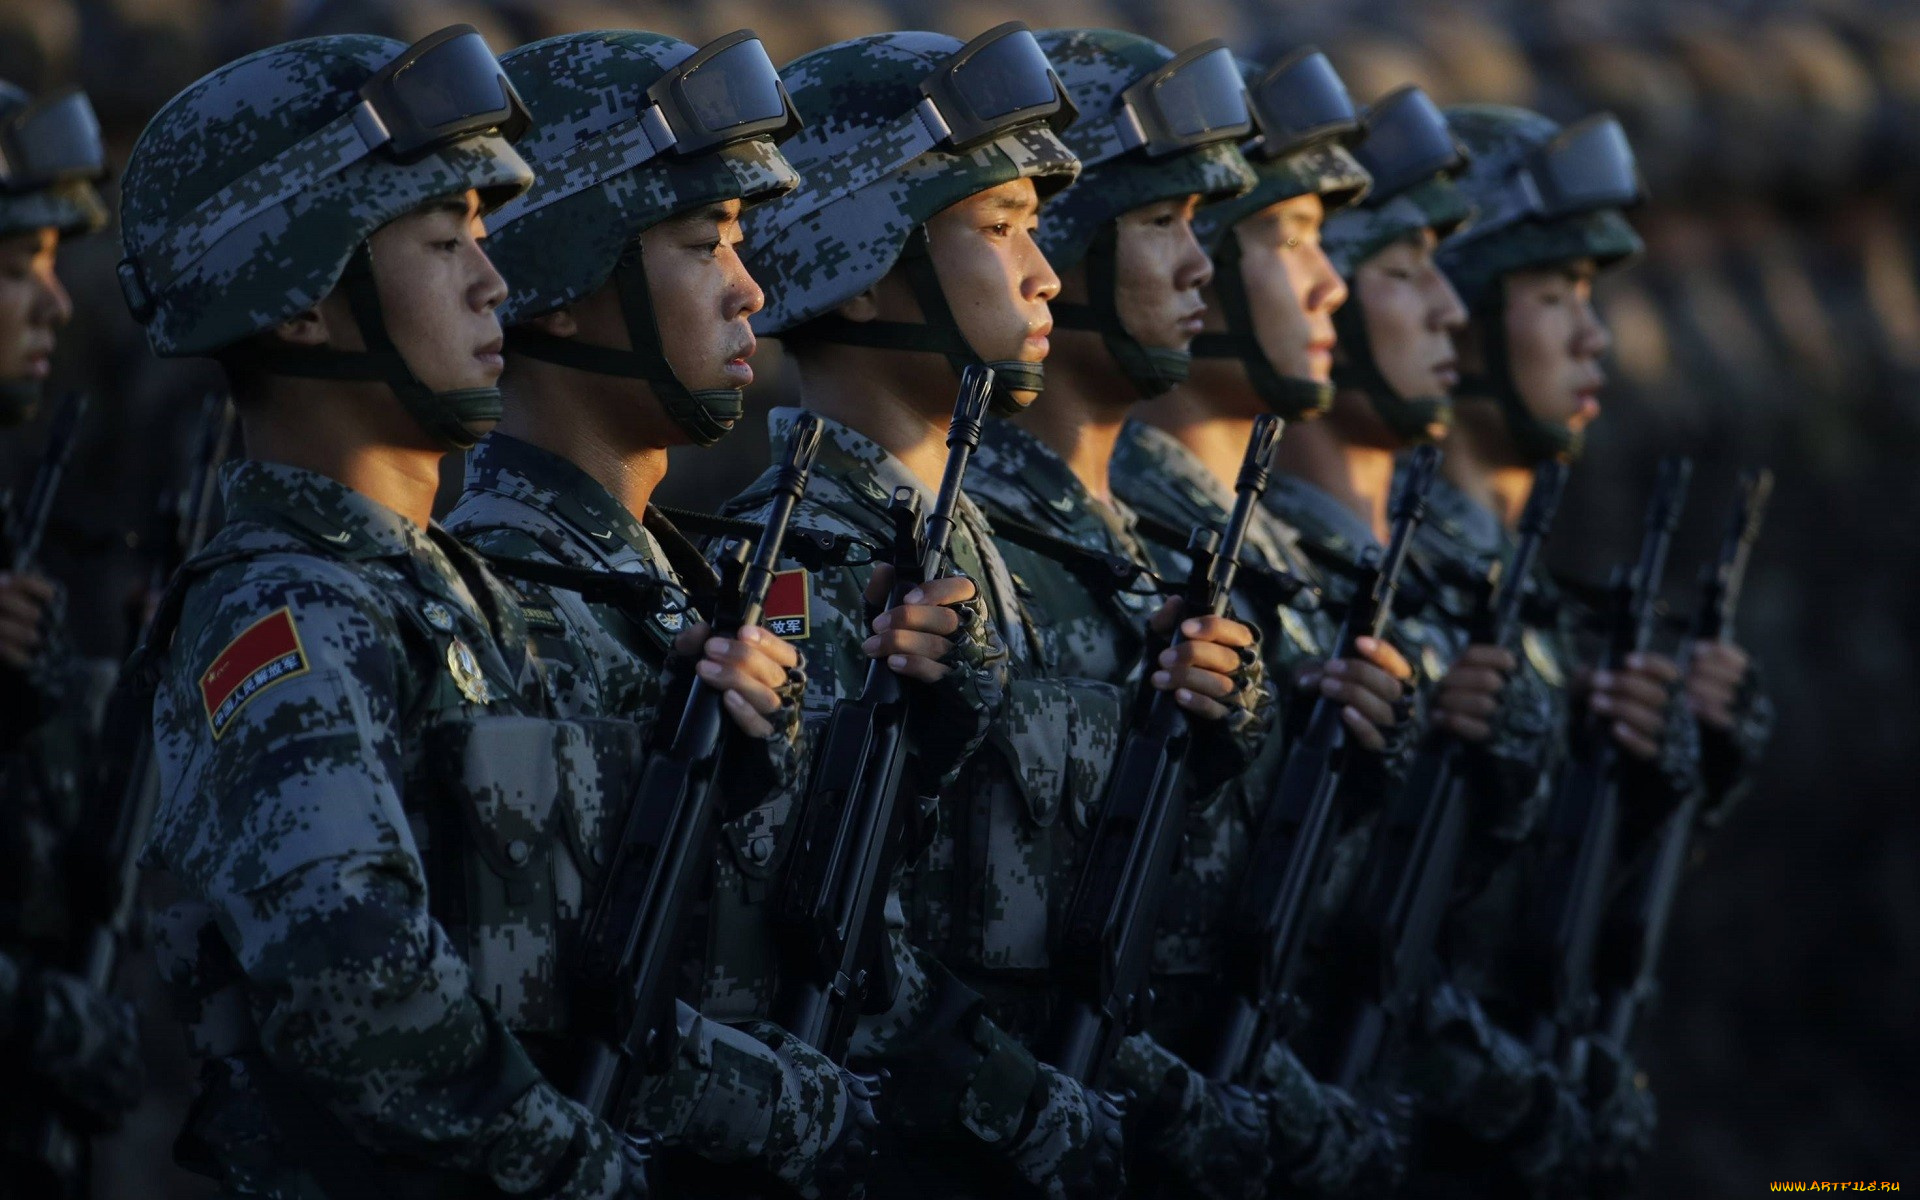 оружие, армия, спецназ, китайская, винтовки, штурмовая, винтовка, шлем, азия, китай, солдаты